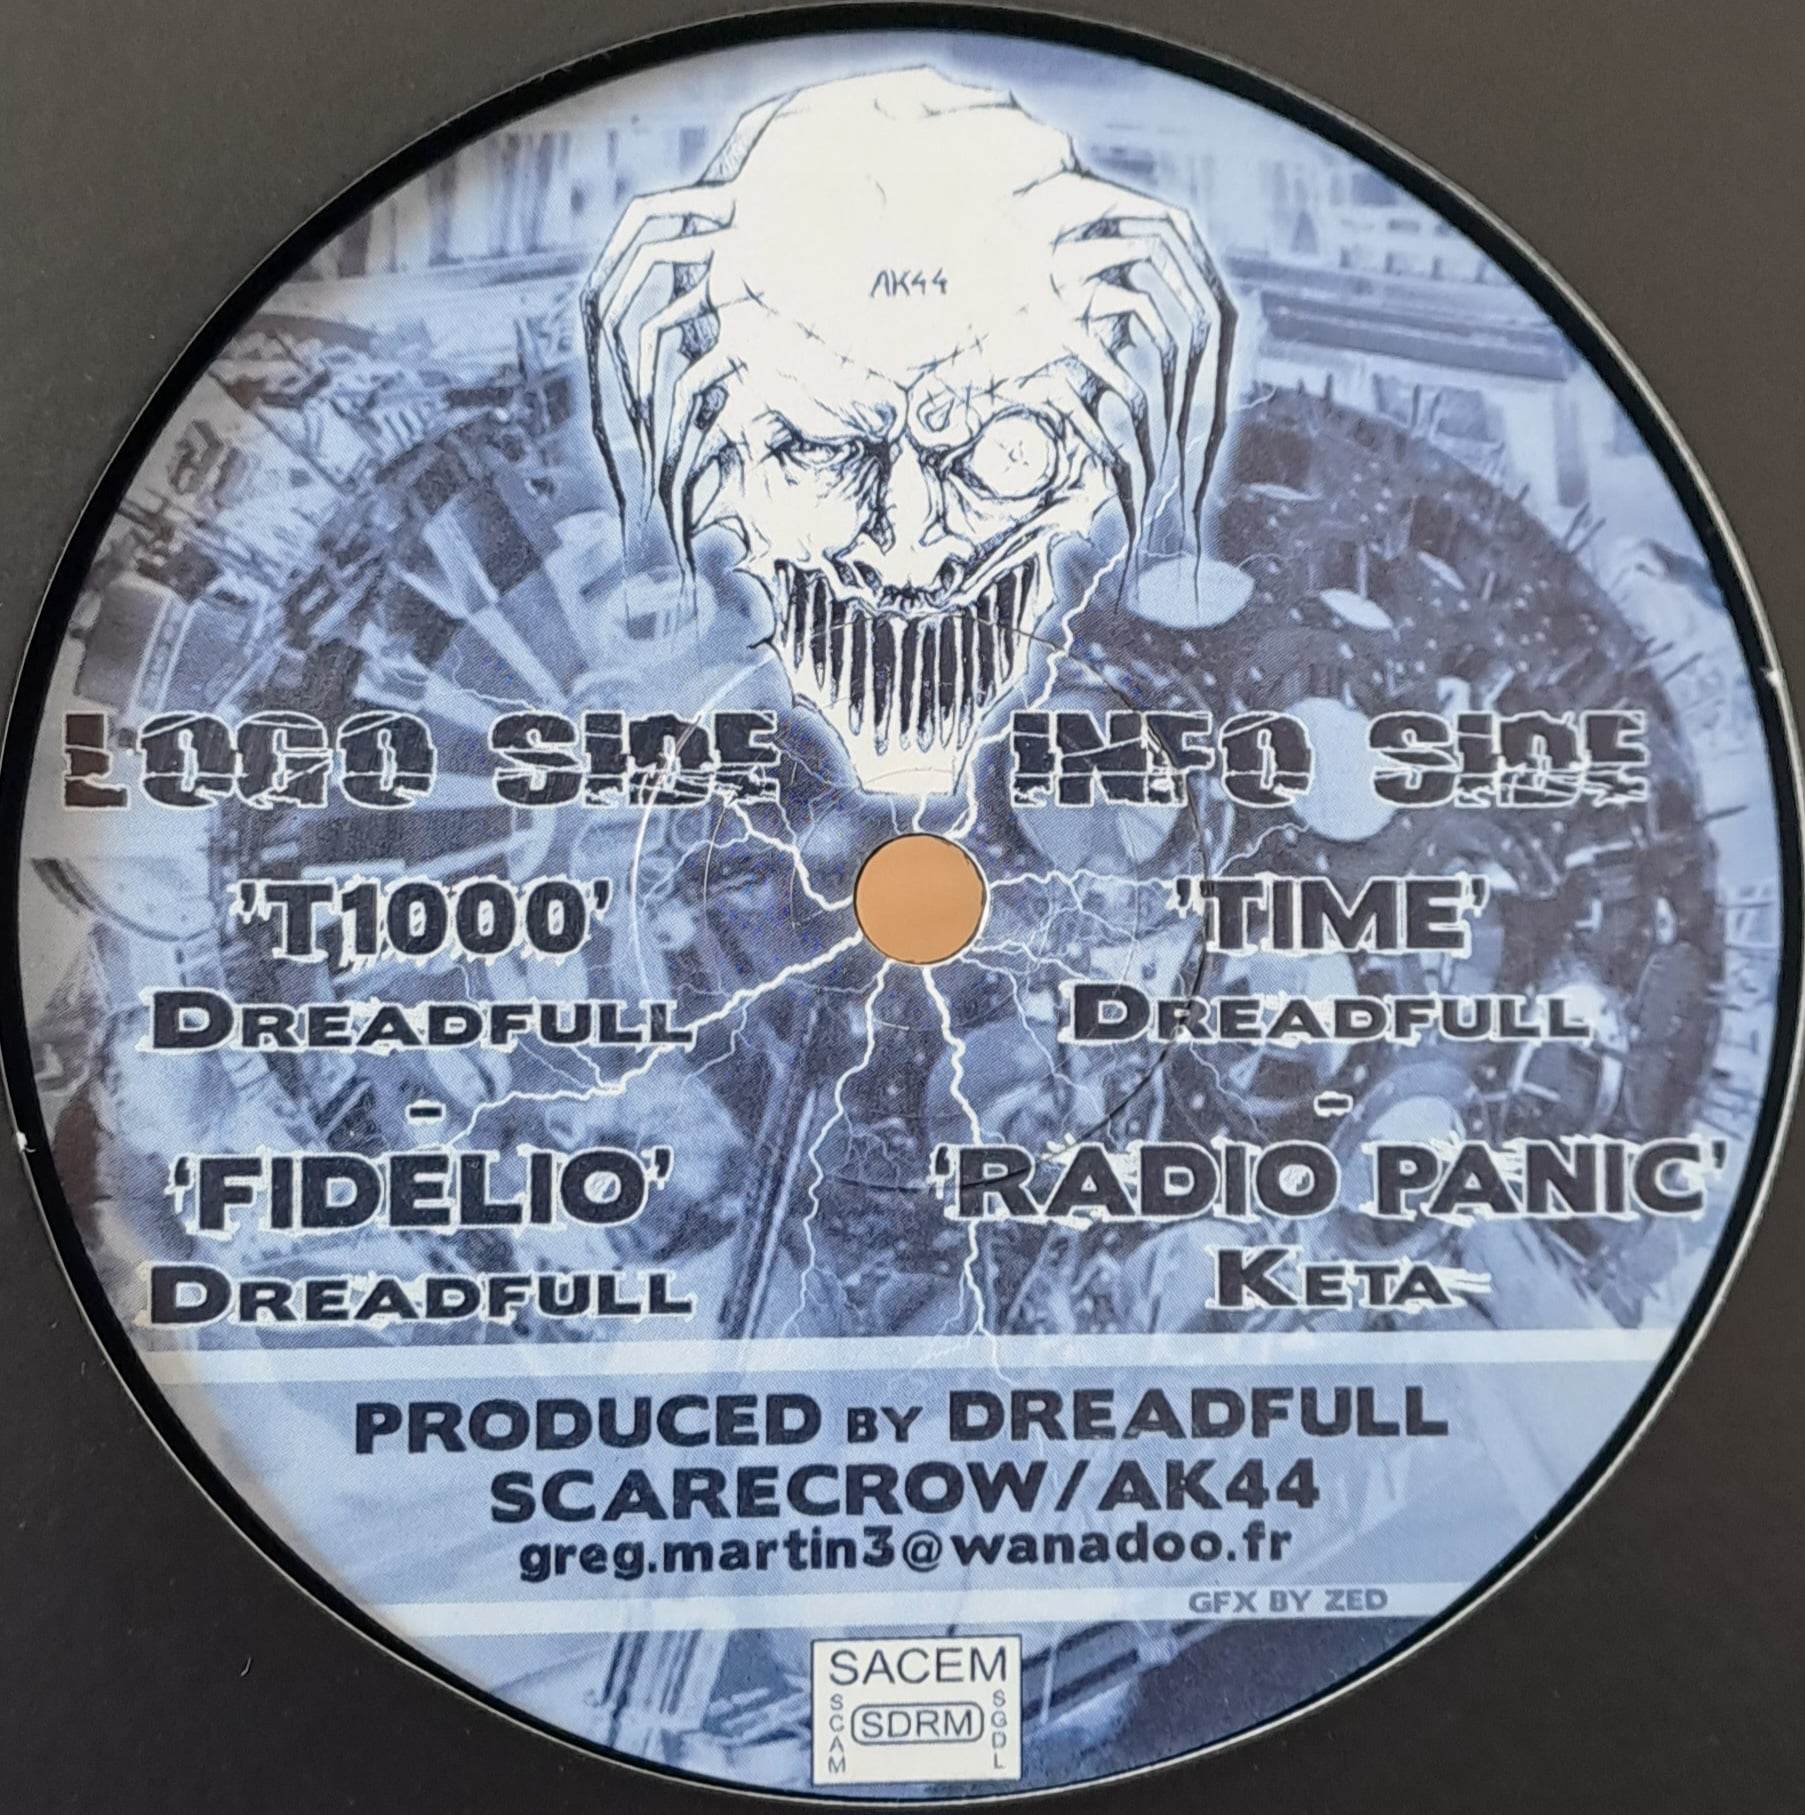 Scarecrow Records 002 - vinyle hardcore